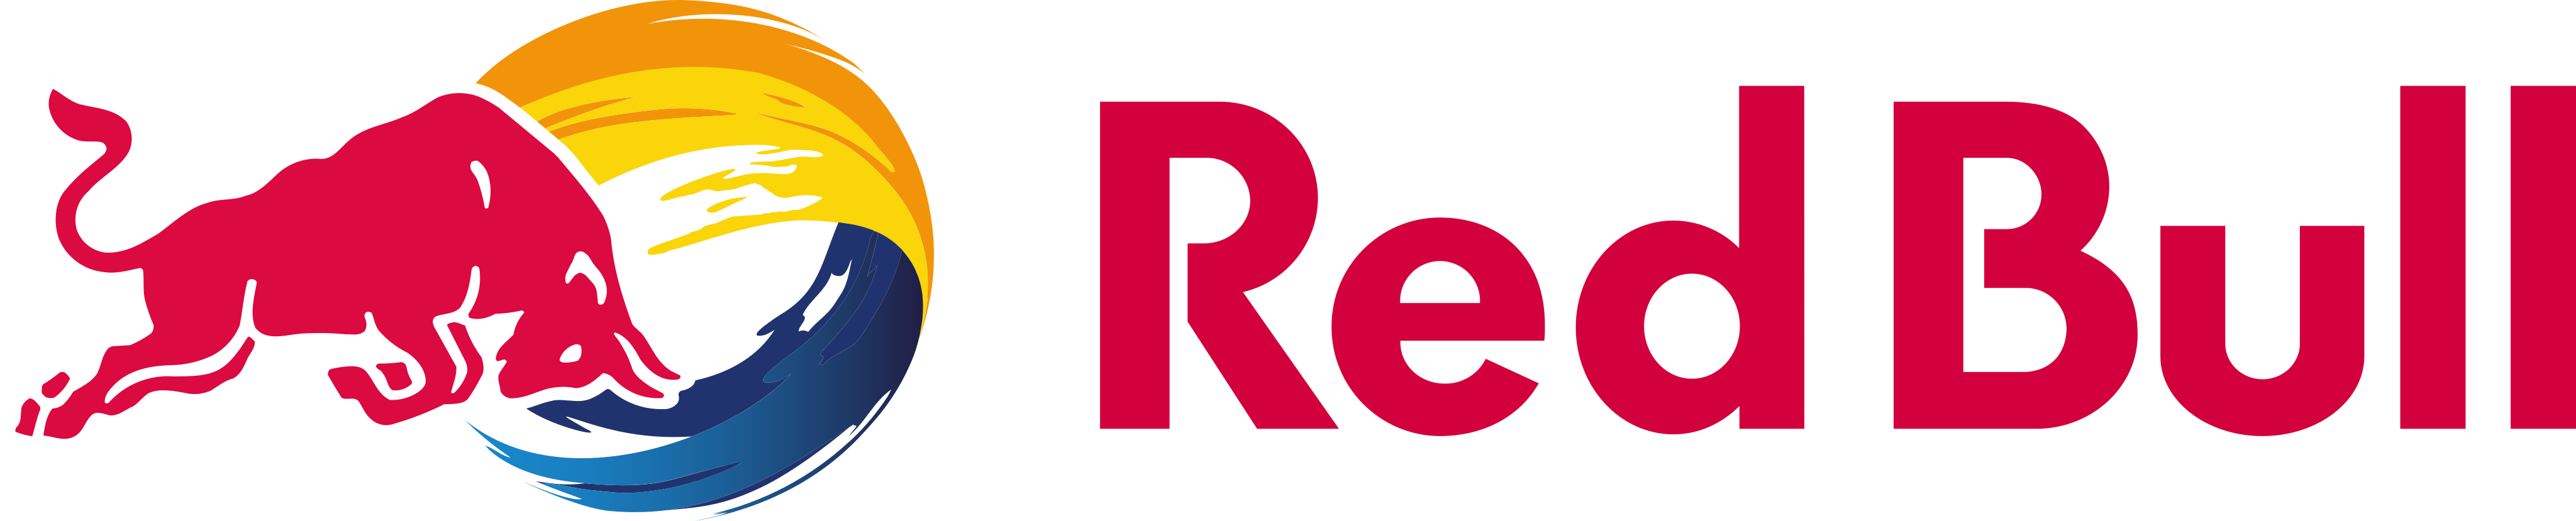 Red Bull [logo]